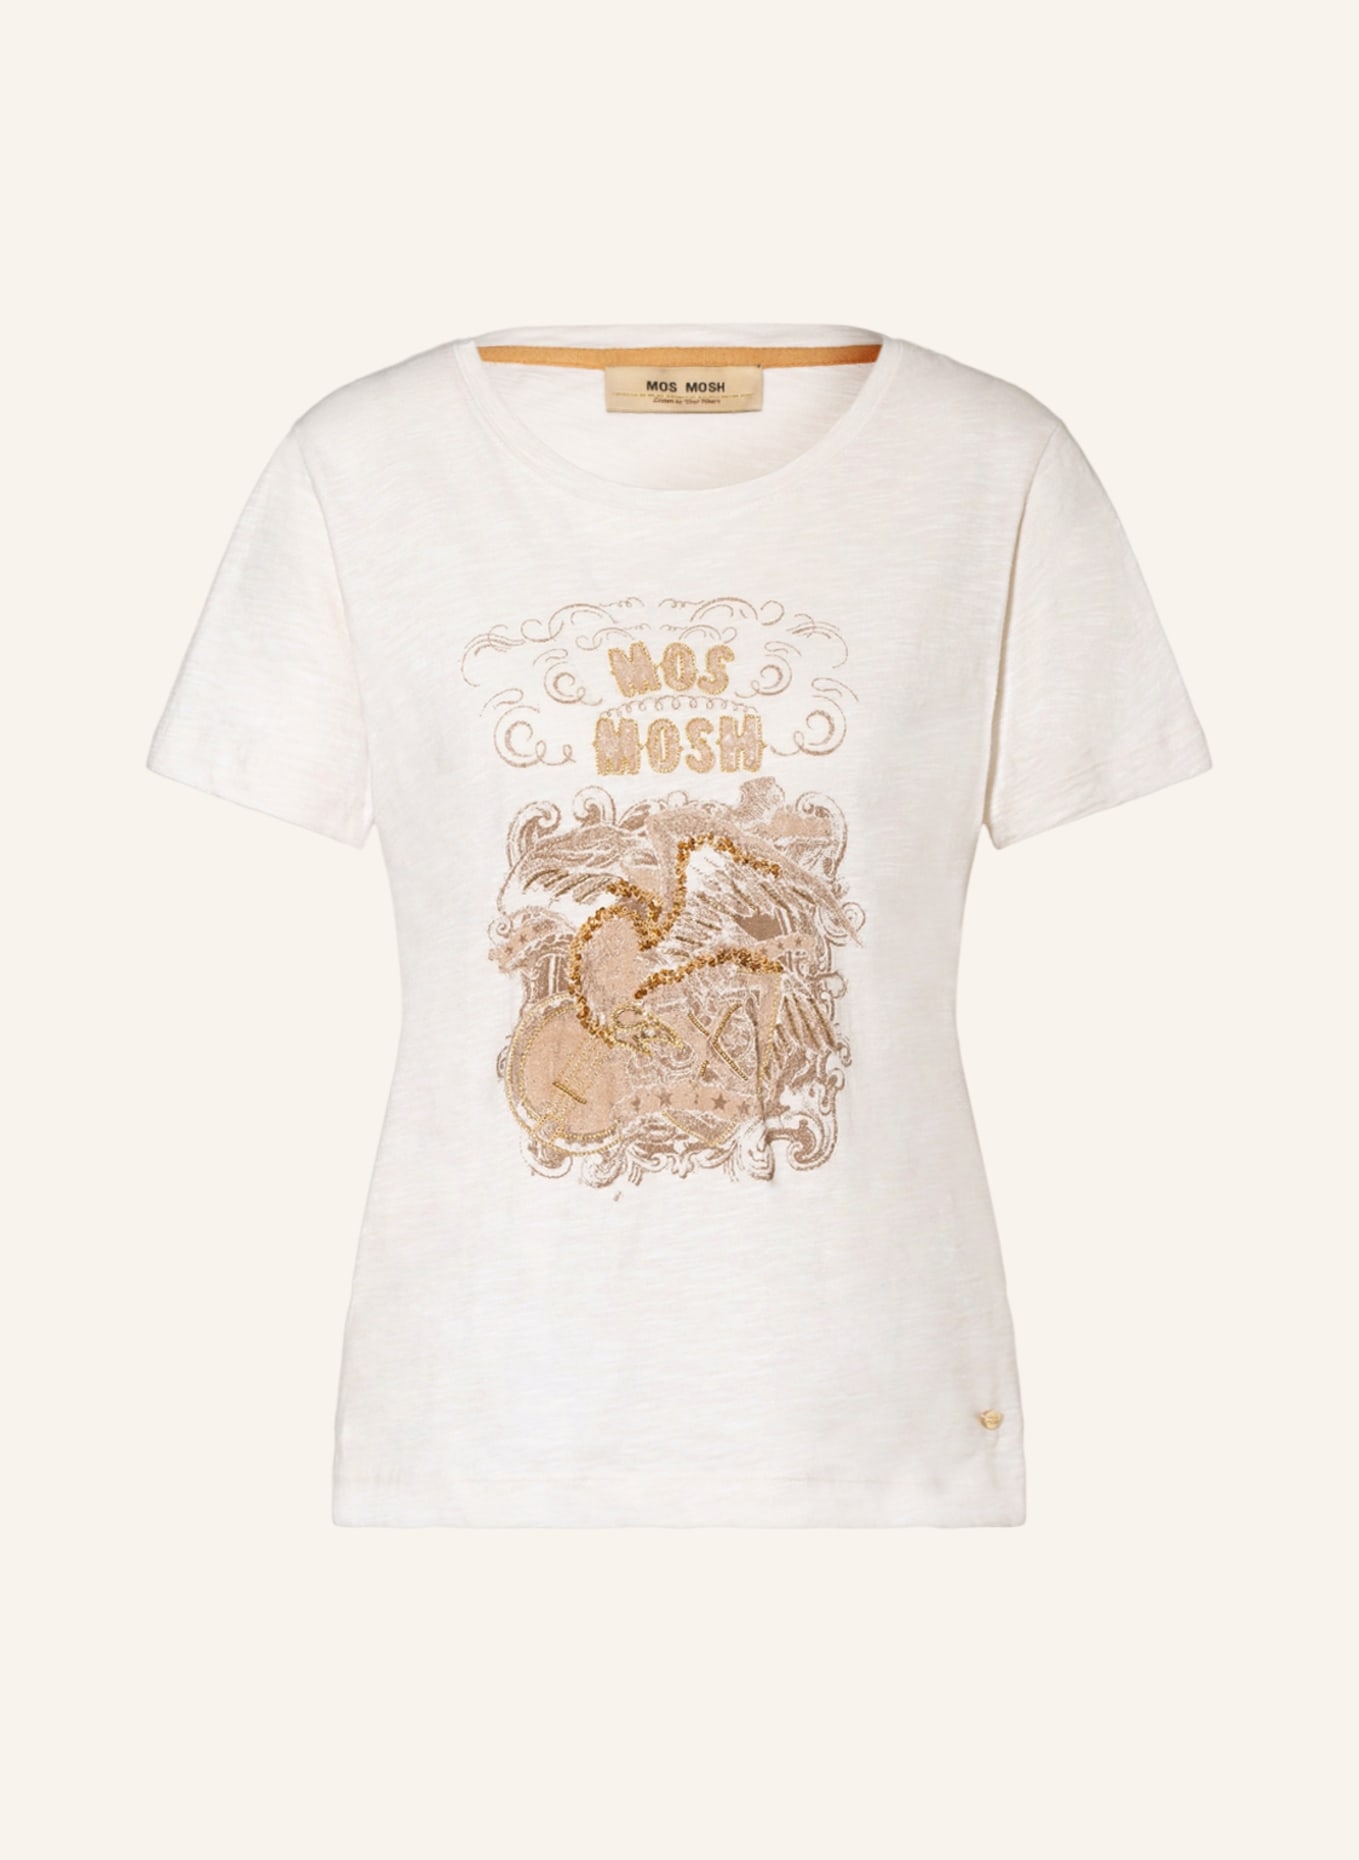 MOS MOSH T-shirt SANA, Color: CREAM (Image 1)